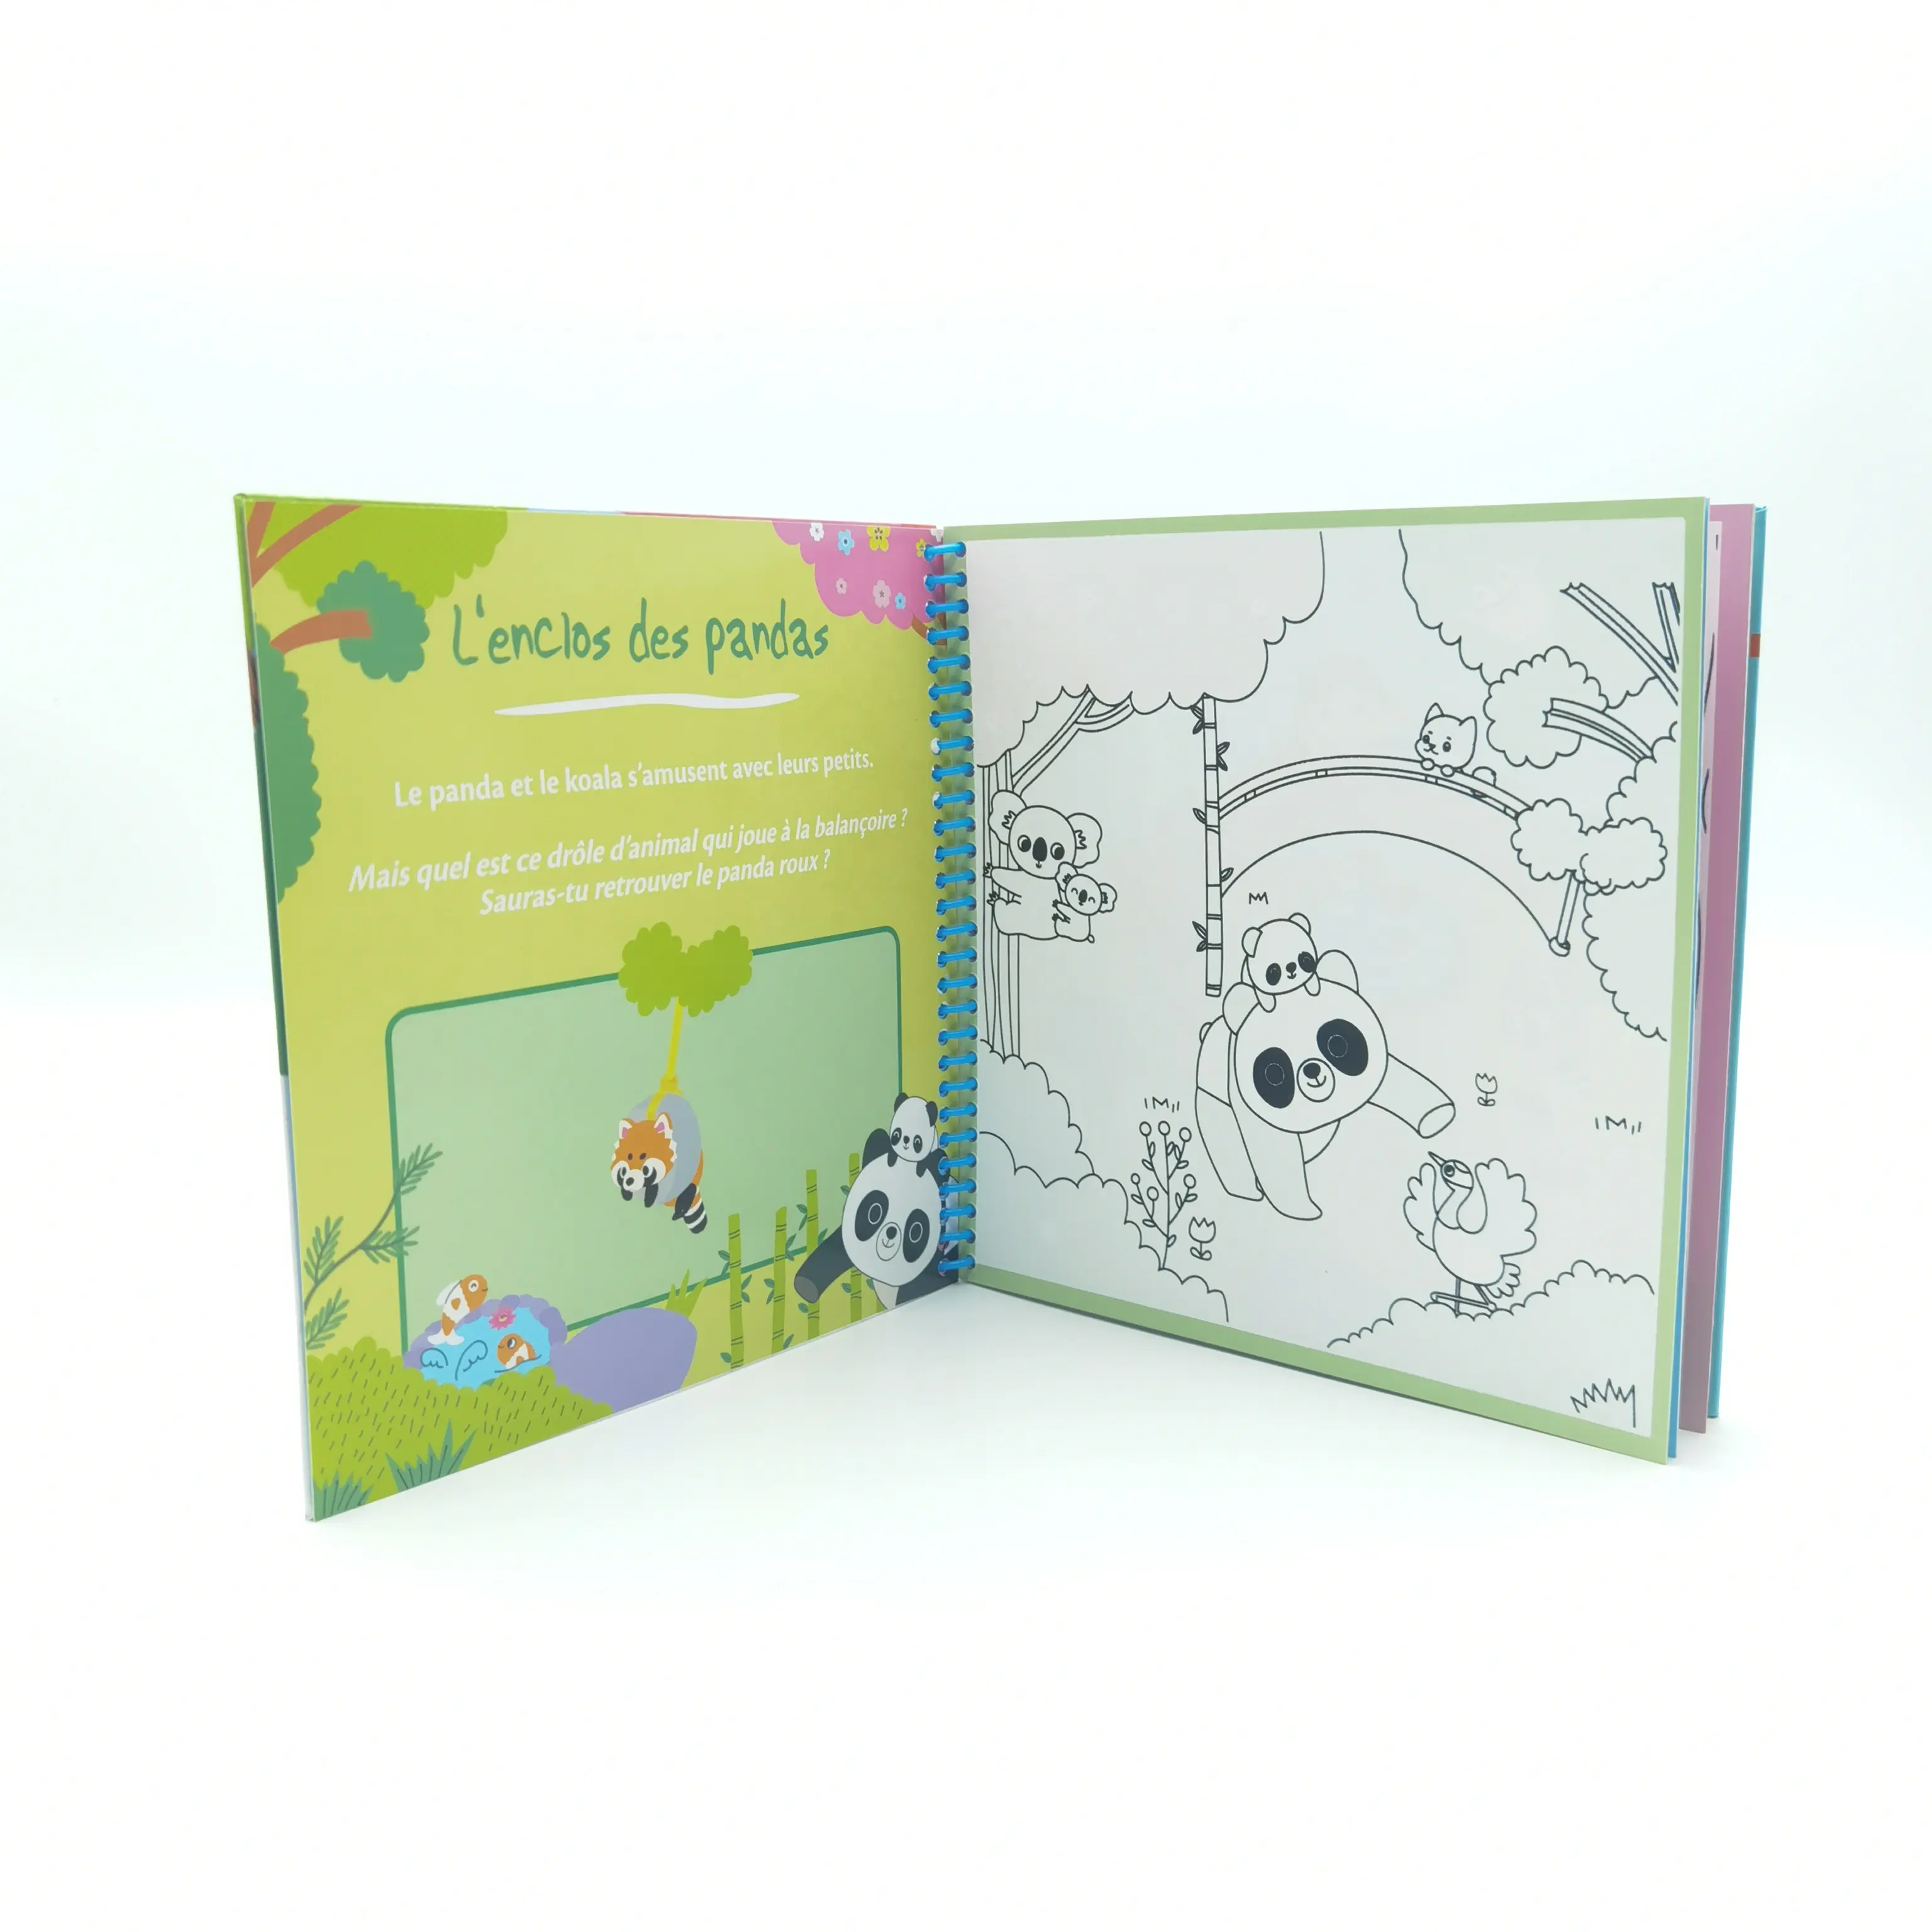 Wasser wiederverwendbare Wasserfarbe Jungen Geburtstagsgeschenk Tier Dinosaurier Einhorn Malerei-Bücher Zeichenspielzeug für Mädchen und Jungen